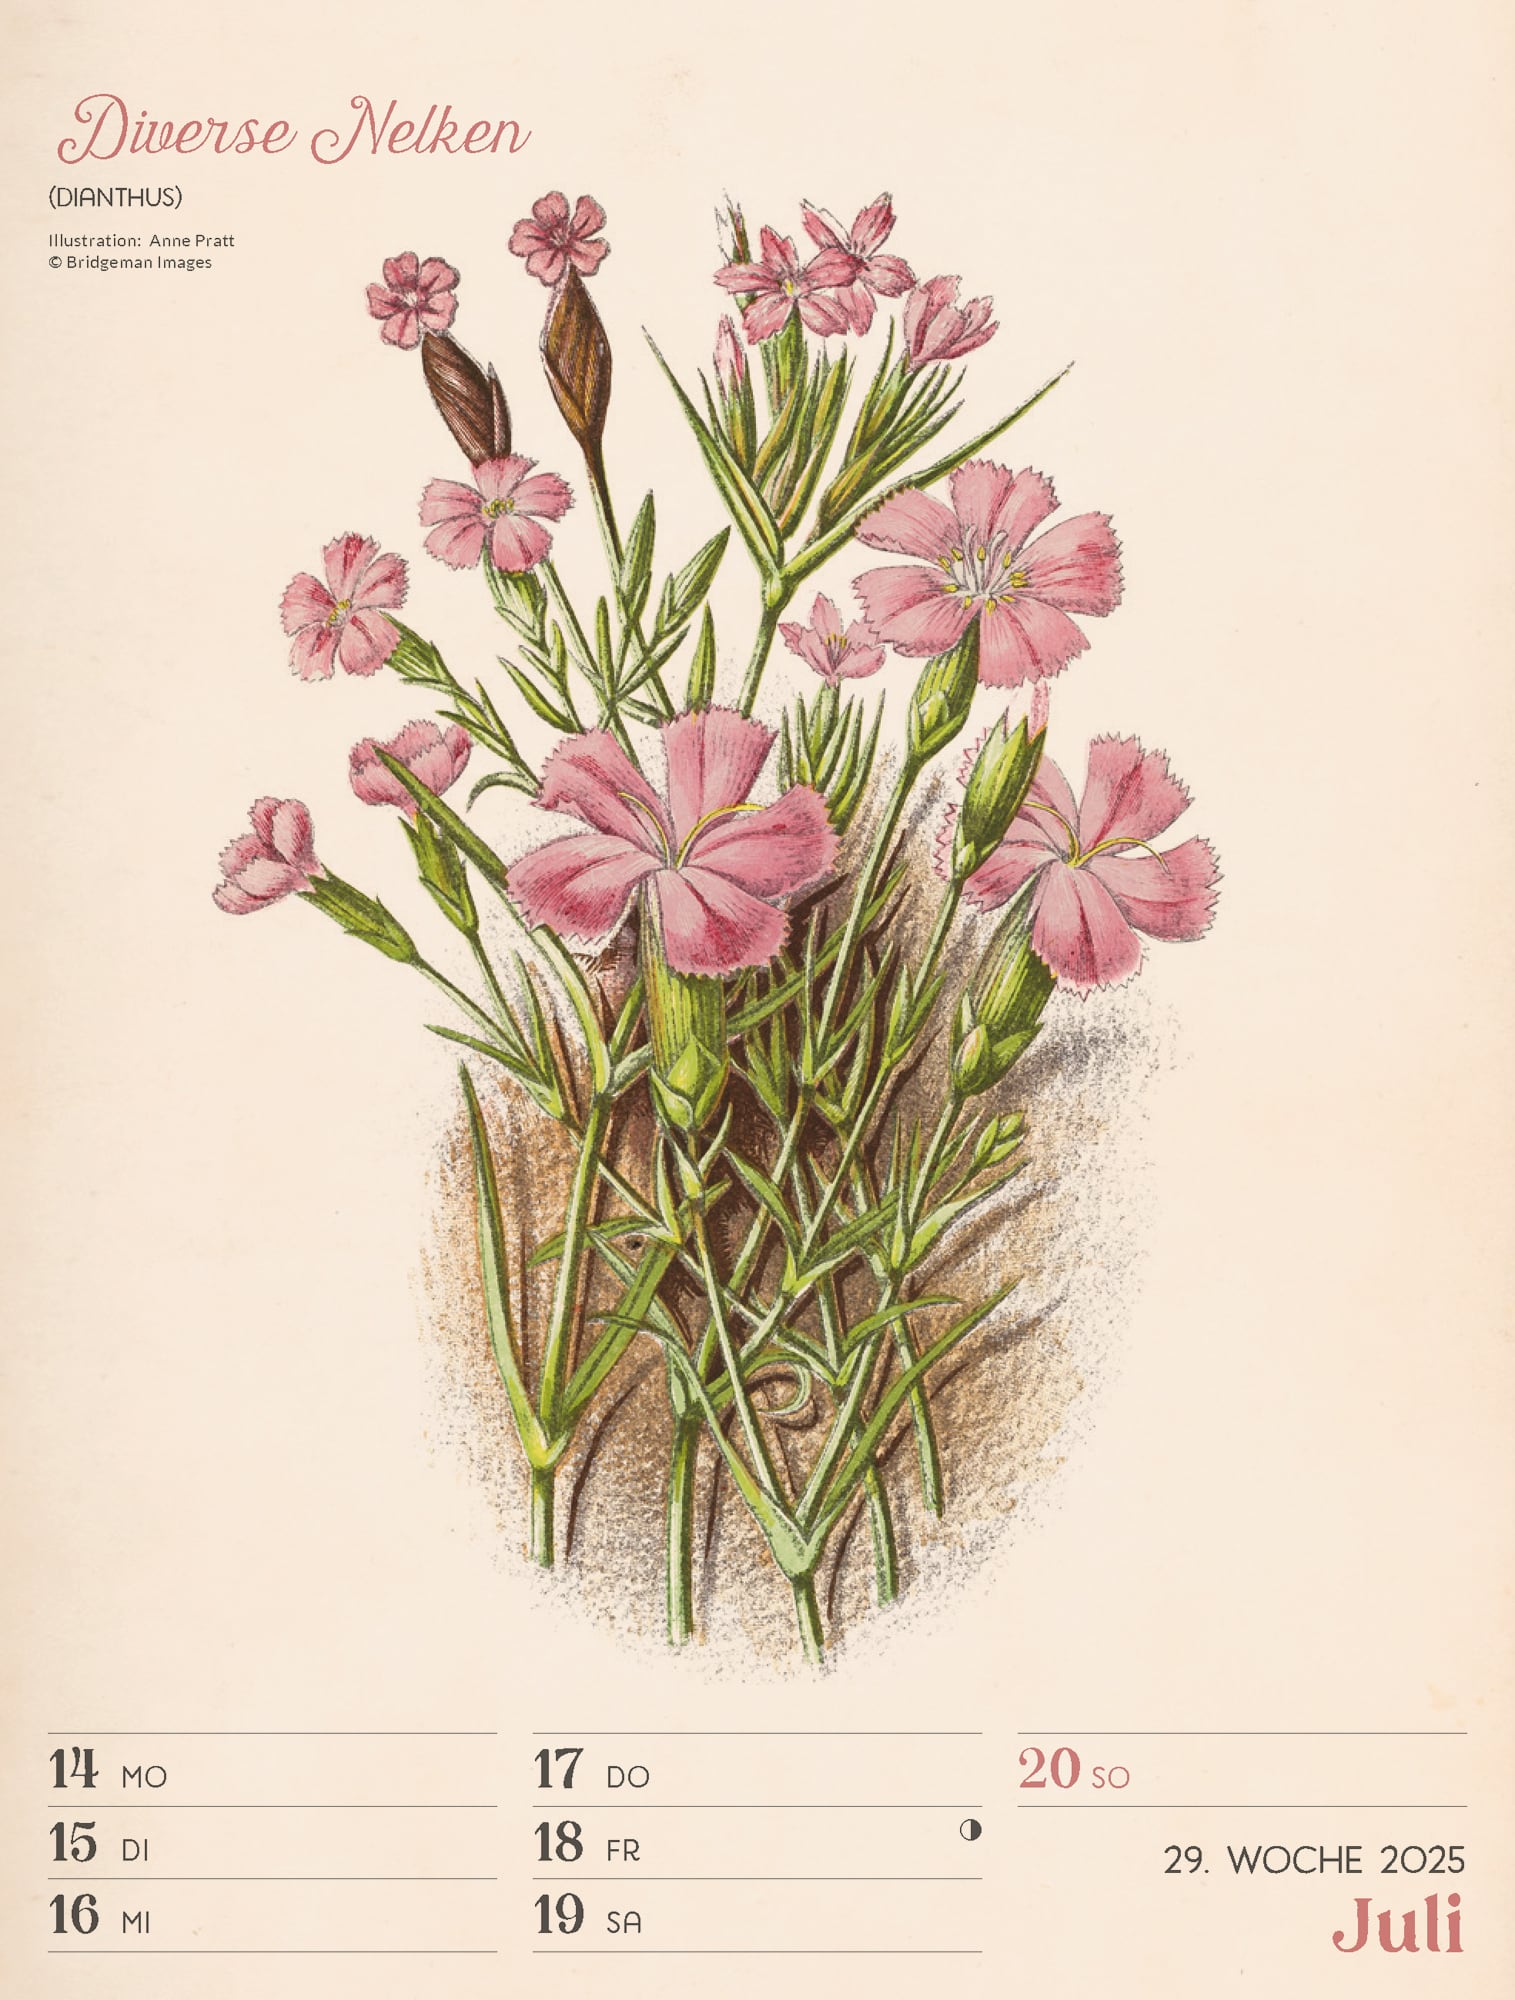 Ackermann Calendar Ars Floralis 2025 - Weekly Planner - Inside View 32